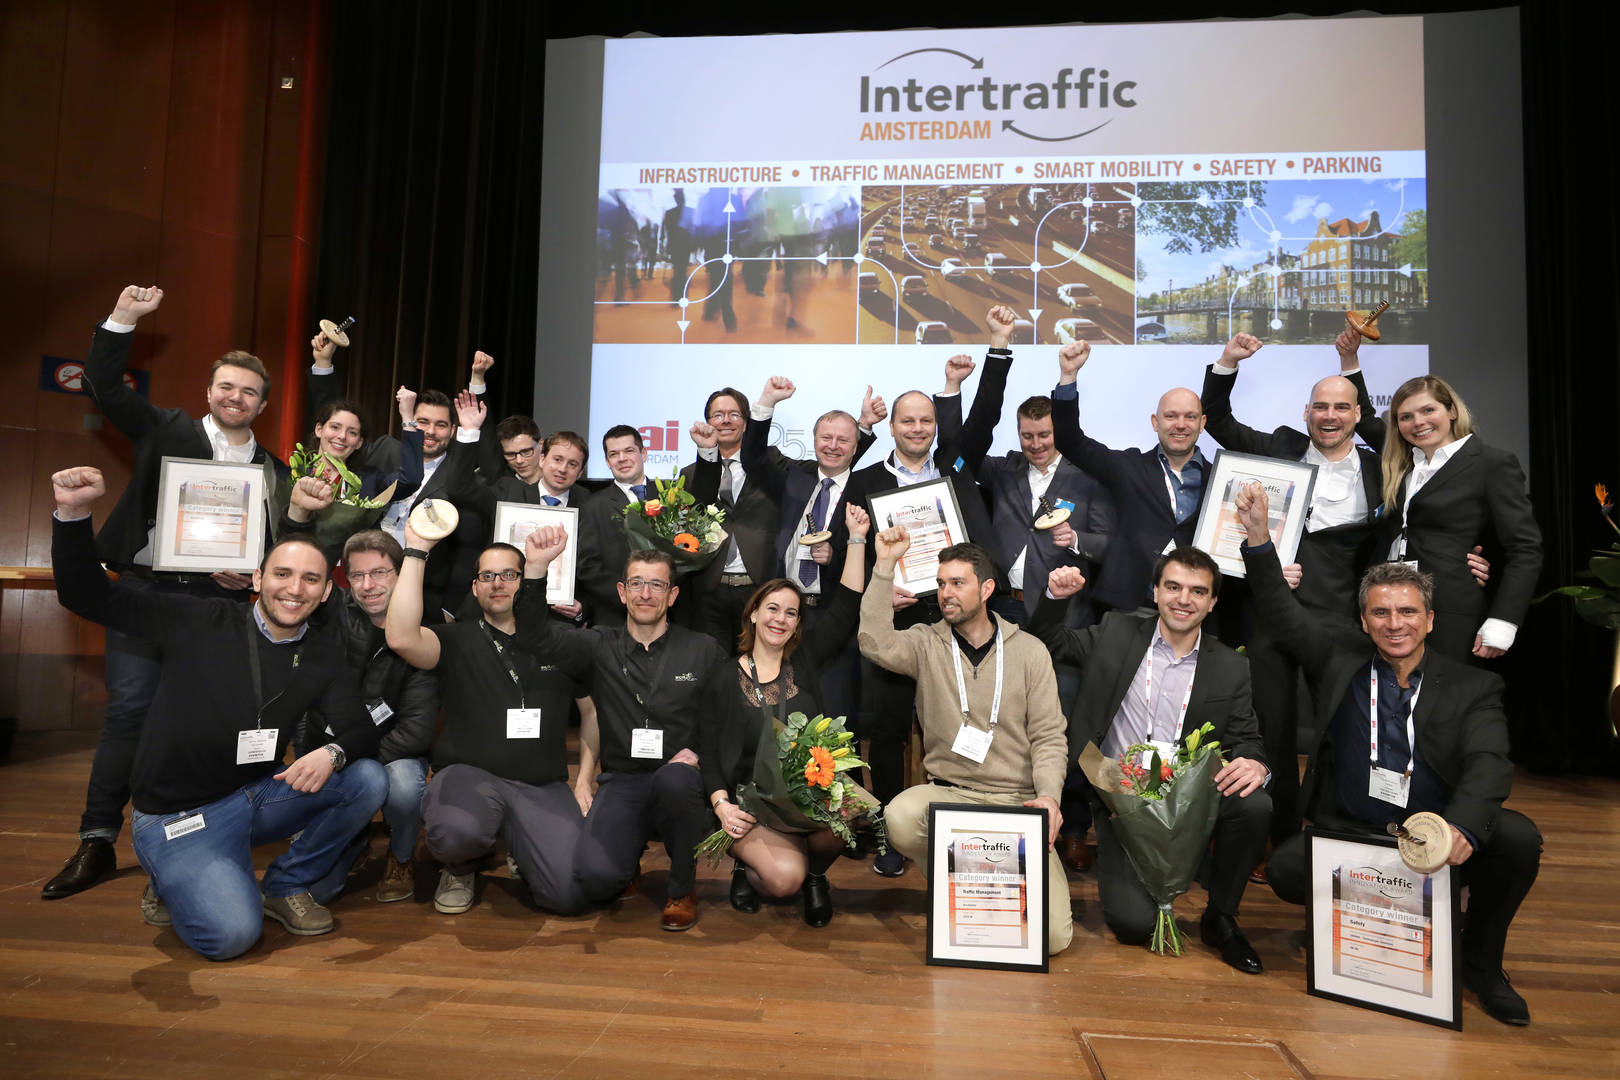 Intertraffic Award 2022 nominees shortlist announced